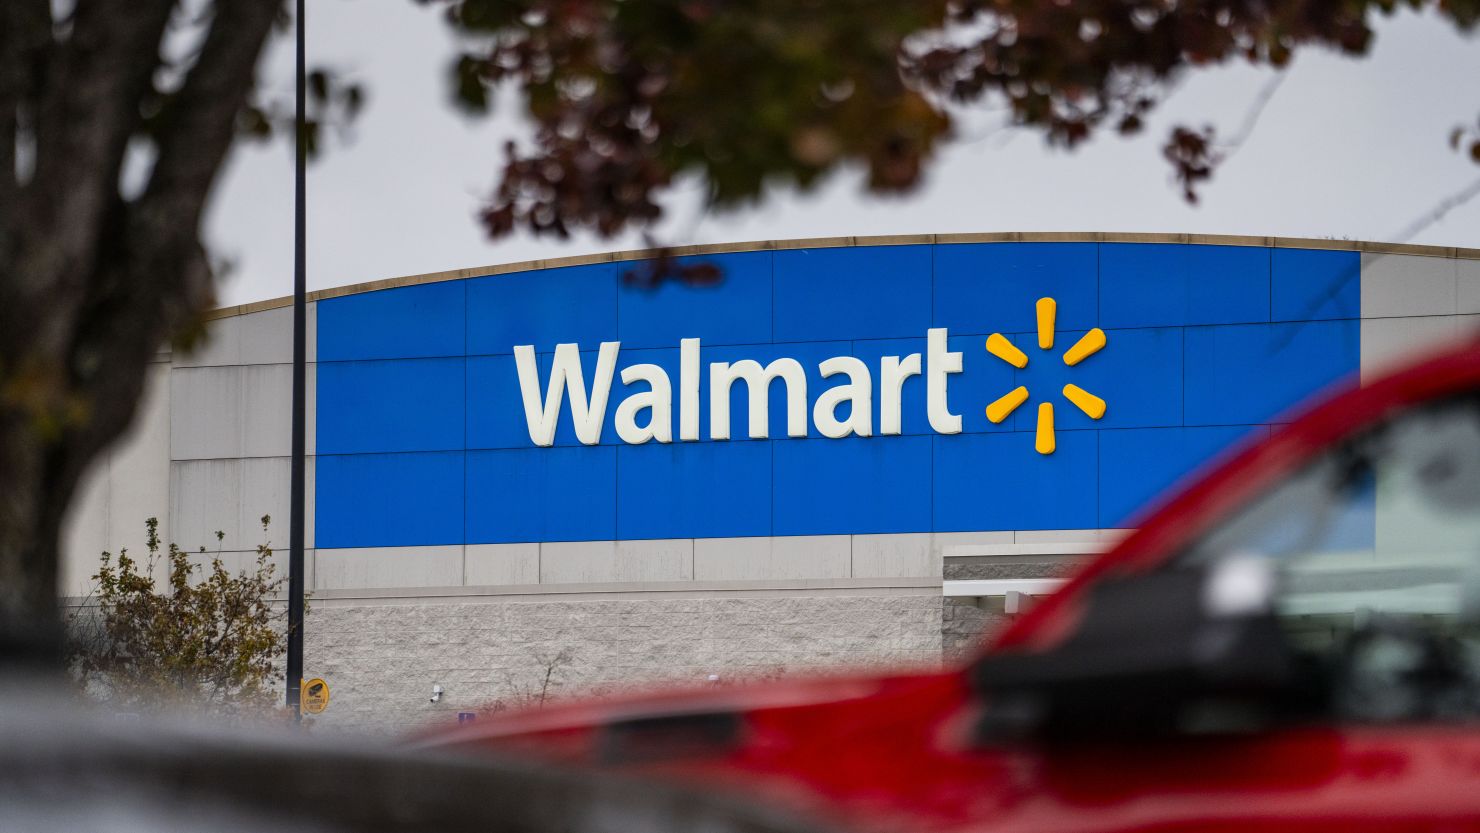 Οι αγοραστές έχουν περιθώριο έως τον Ιούνιο να διεκδικήσουν μέρος του διακανονισμού Walmart $45 εκατομμυρίων